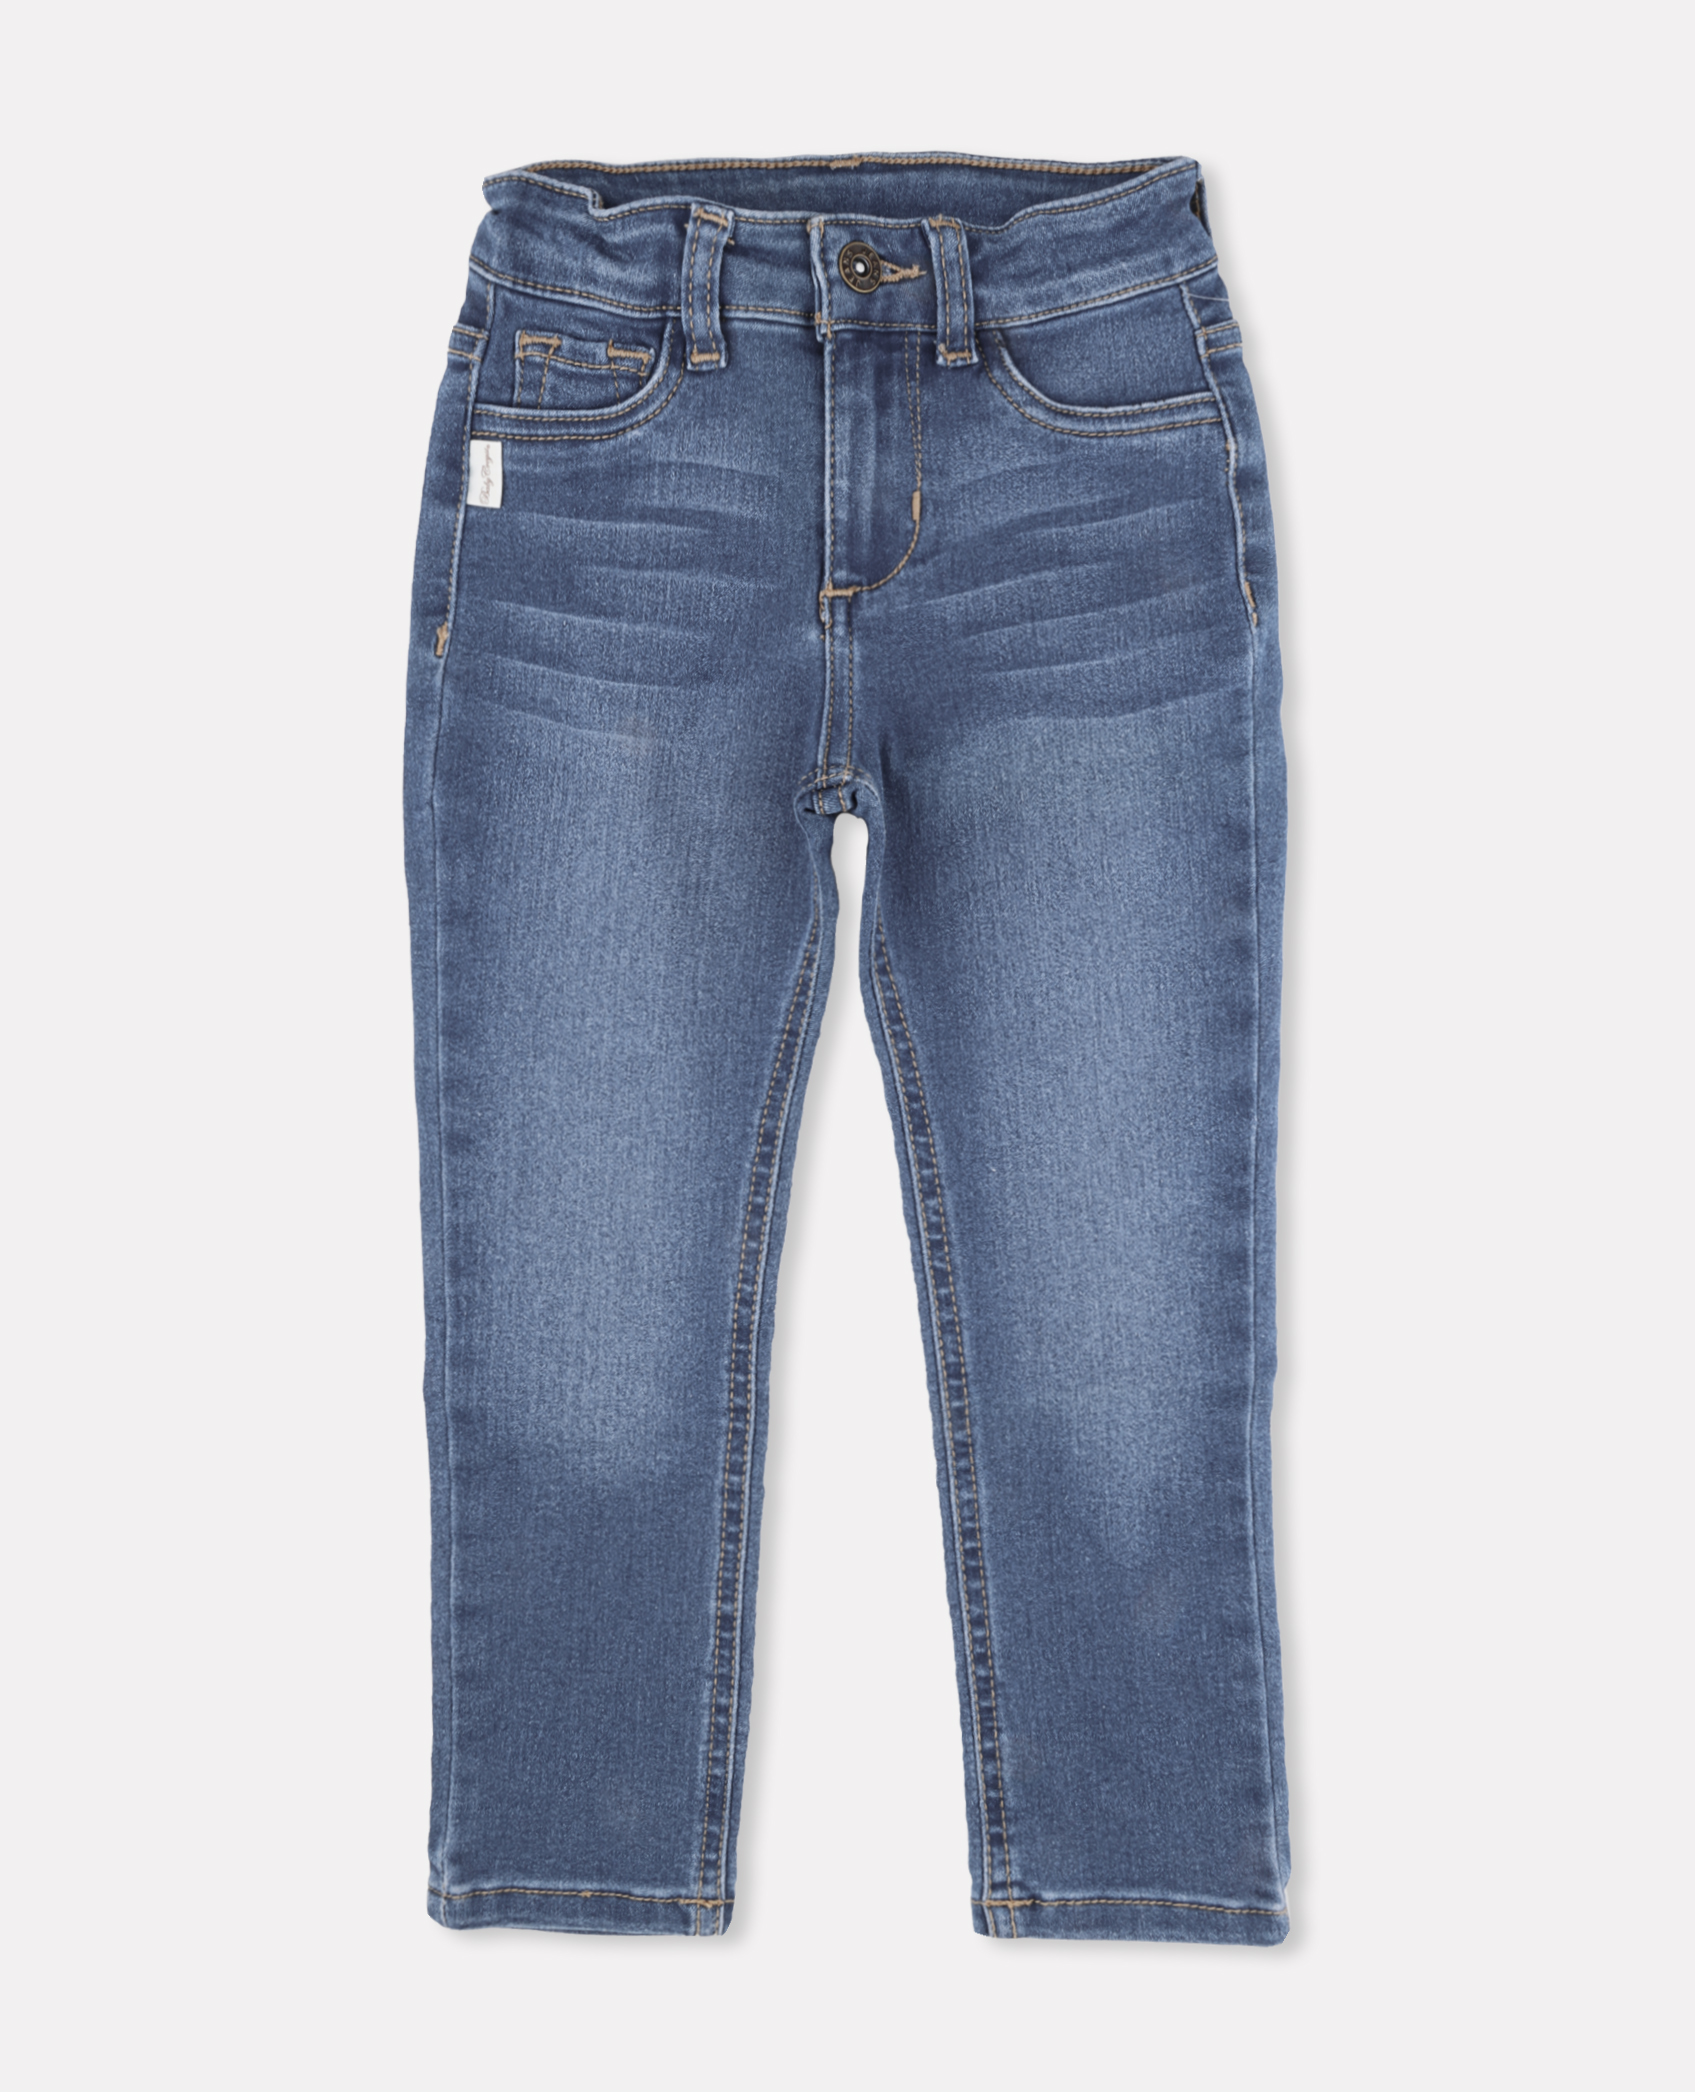 Jeans Pantalon de Mezclilla Deslavado Strech Azul accesorios de